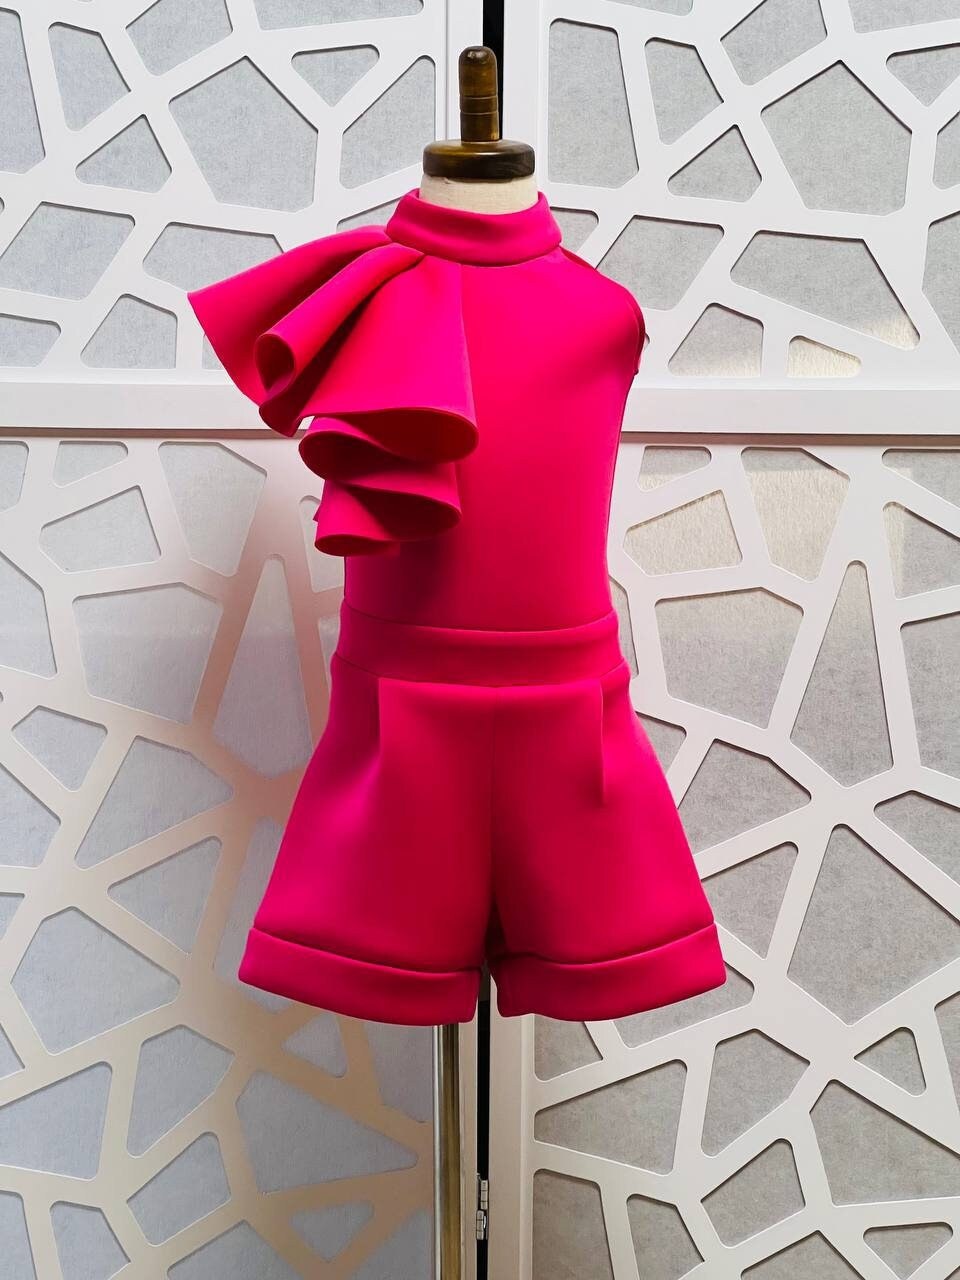 Hot Pink Overall Strampler Festzug Outfit Mädchen Neopren Freizeitkleidung Rosa Rüschen Benutzerdefinierte Einzigartige Taucher Shorts Mode von QuiteTheDress